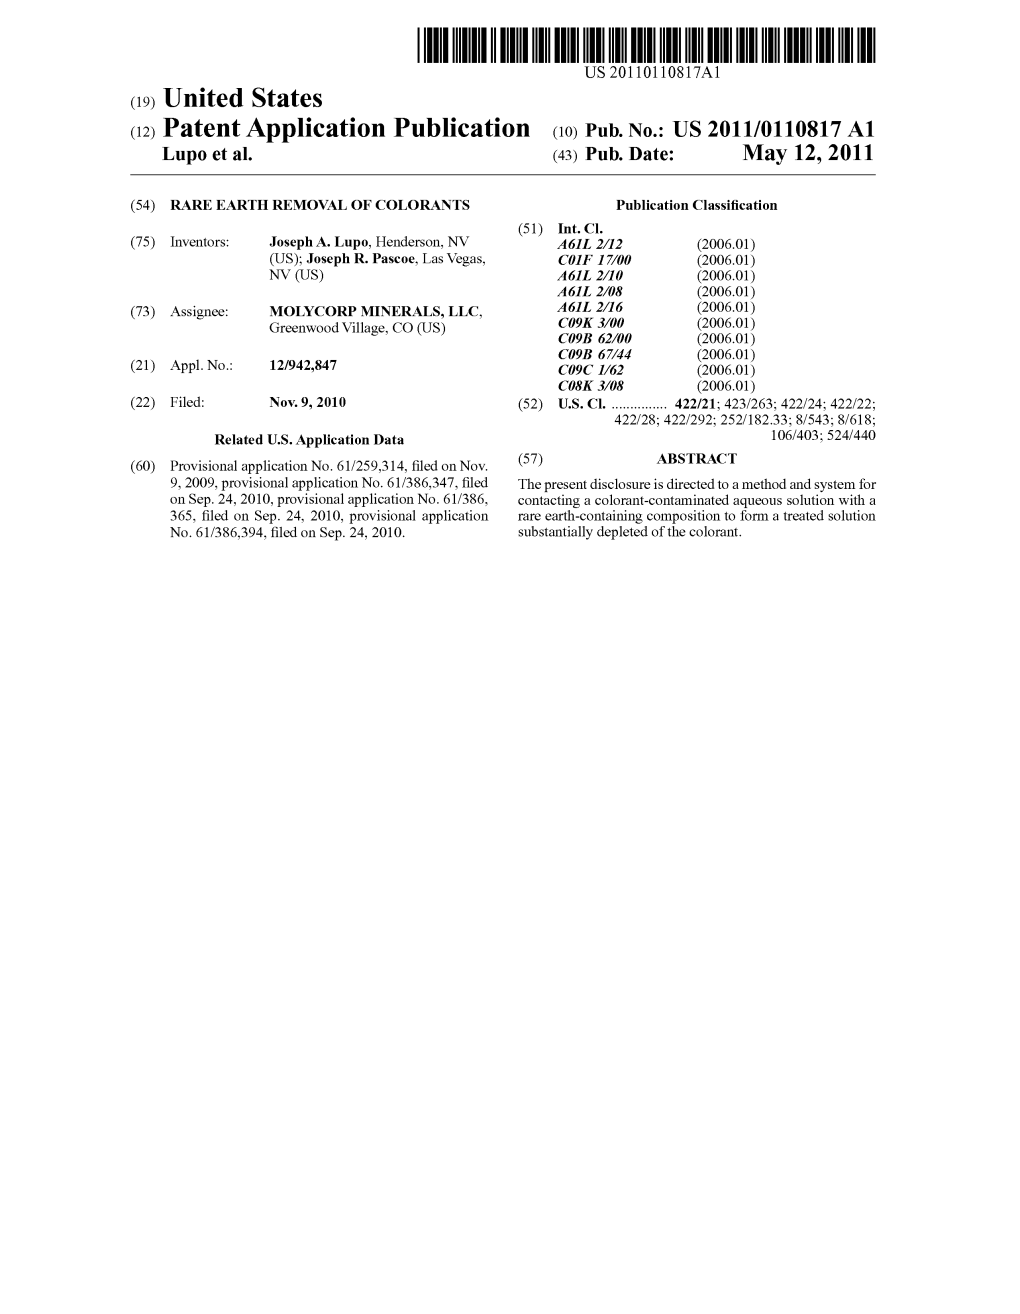 (12) Patent Application Publication (10) Pub. No.: US 2011/0110817 A1 Lupo Et Al